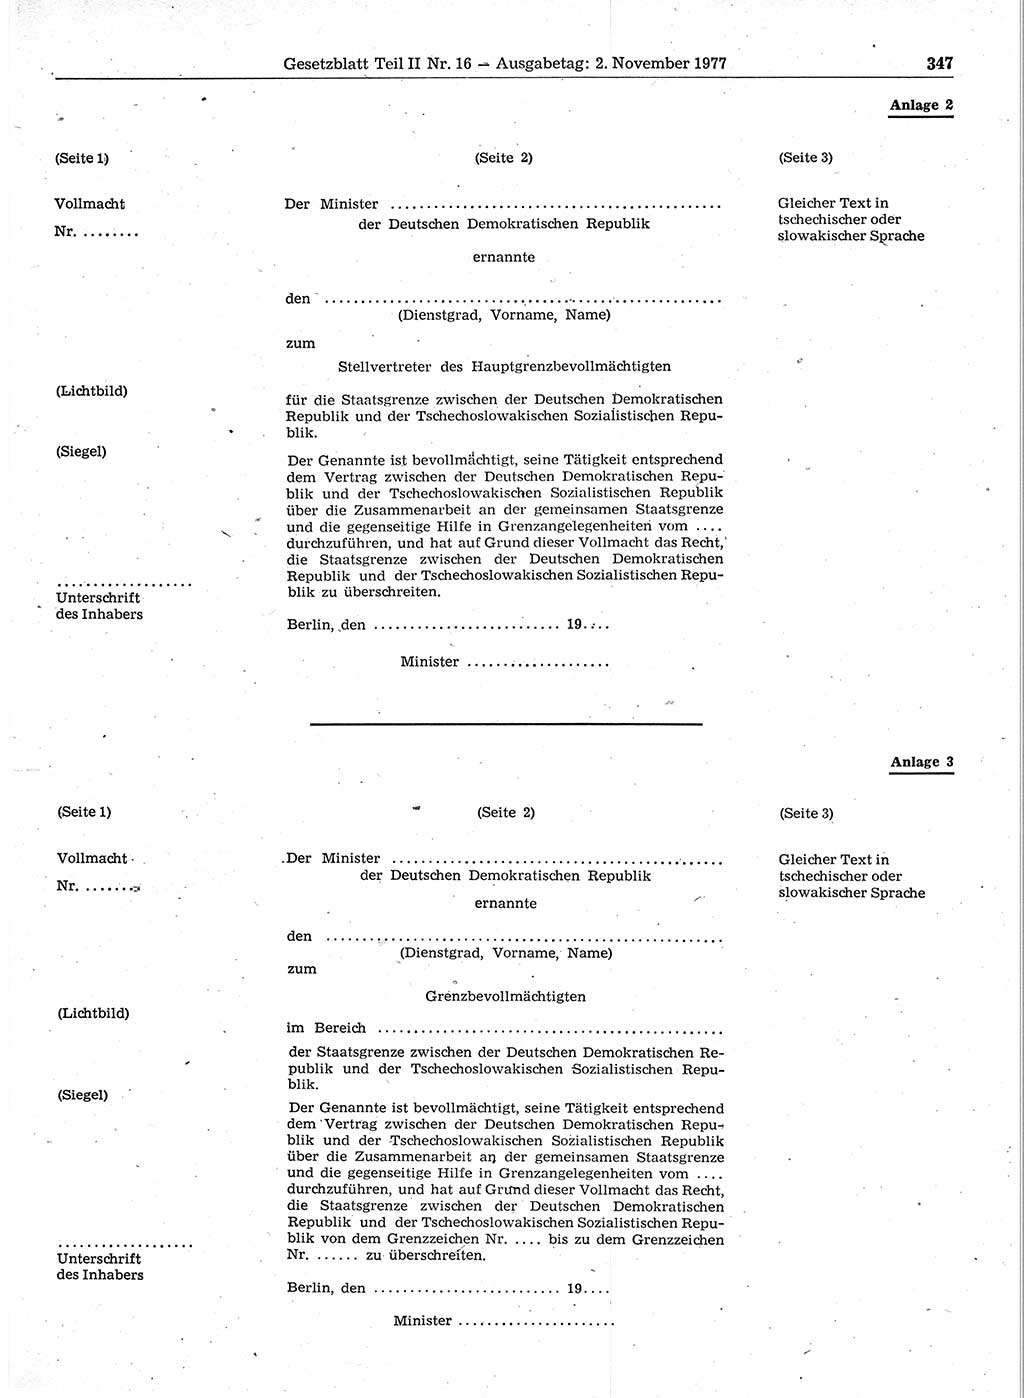 Gesetzblatt (GBl.) der Deutschen Demokratischen Republik (DDR) Teil ⅠⅠ 1977, Seite 347 (GBl. DDR ⅠⅠ 1977, S. 347)